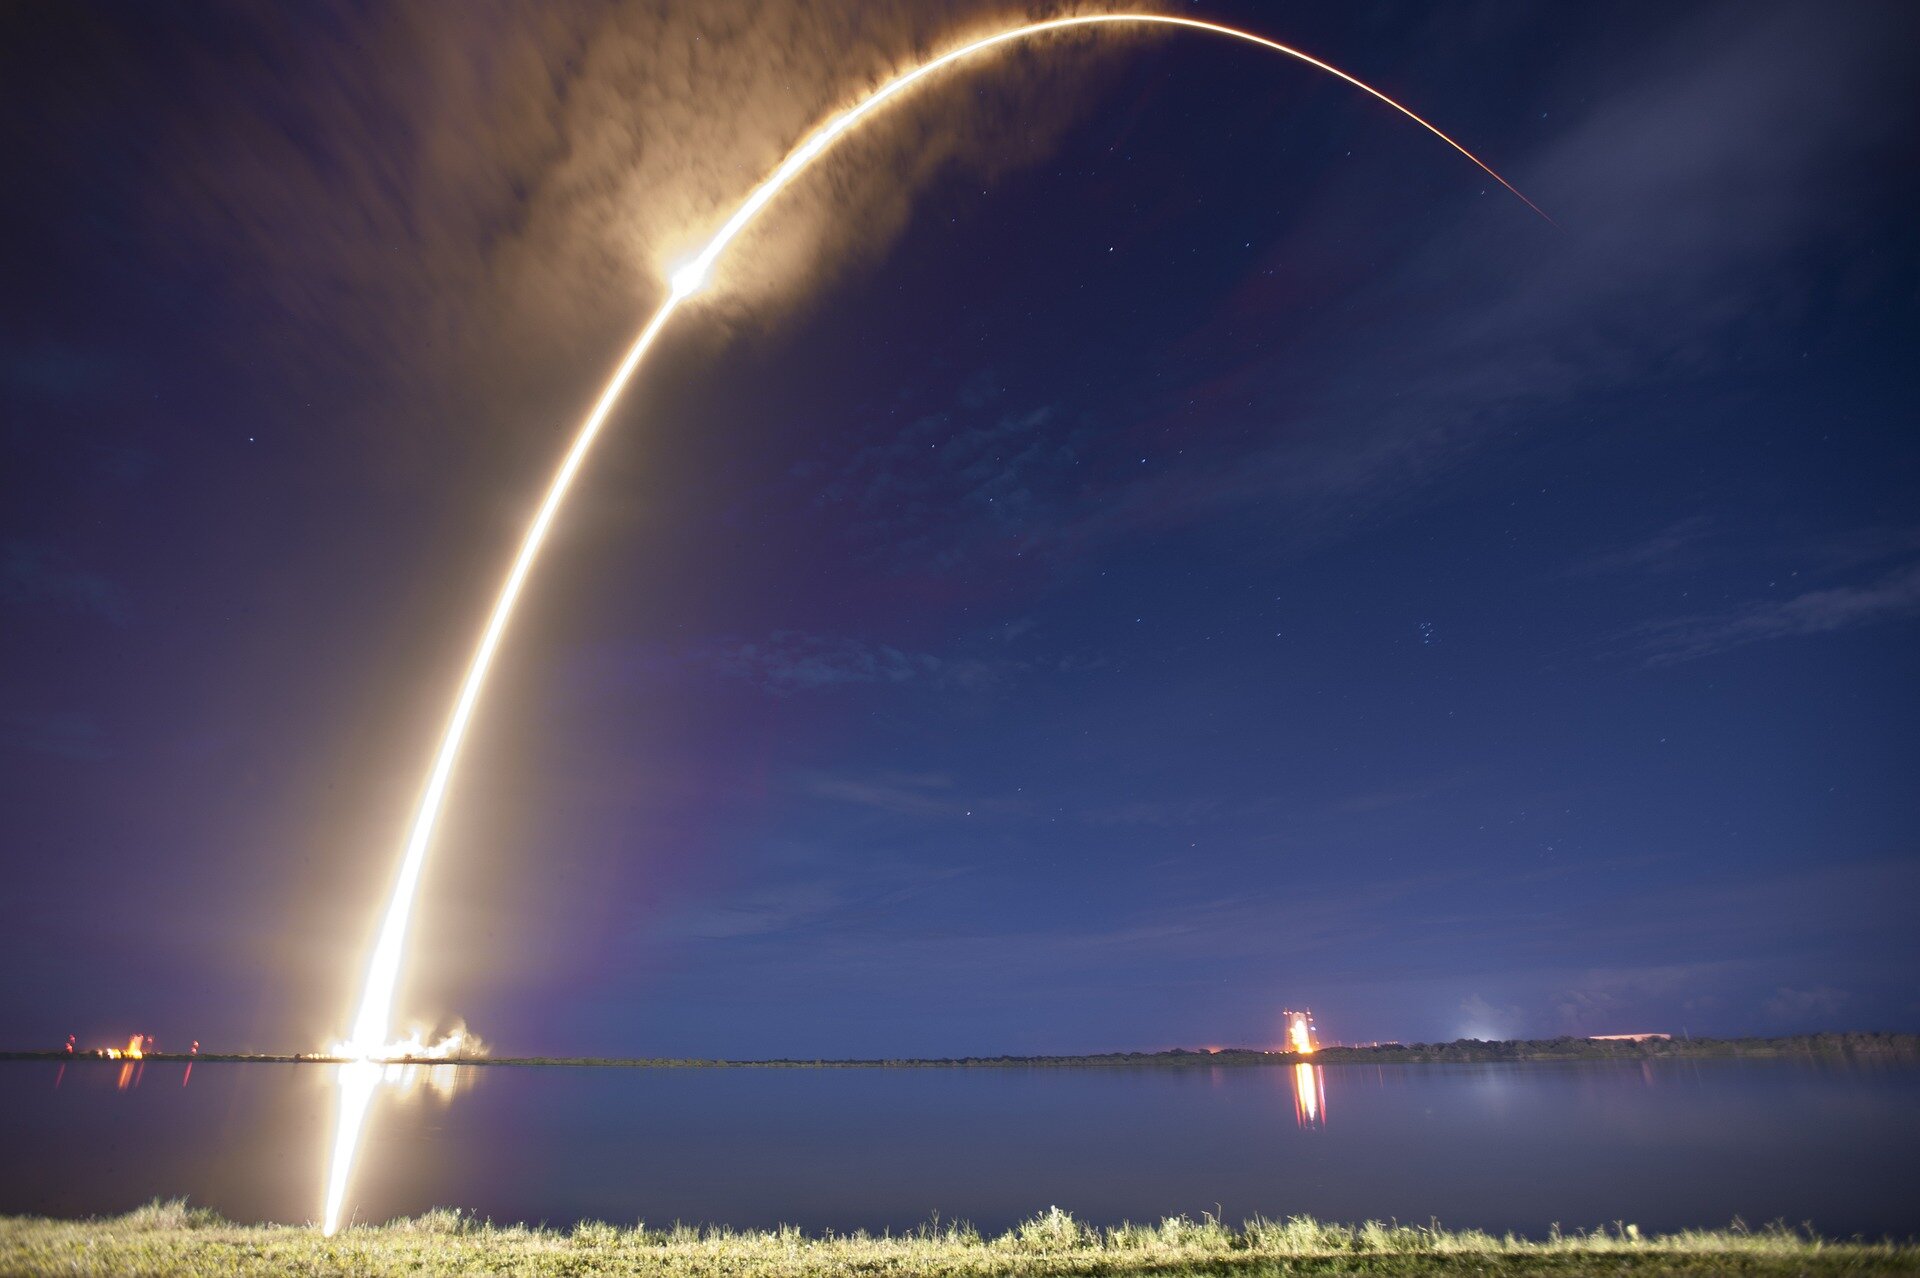 Сегодняшний запуск SpaceX побьет рекорд космического побережья этого года.